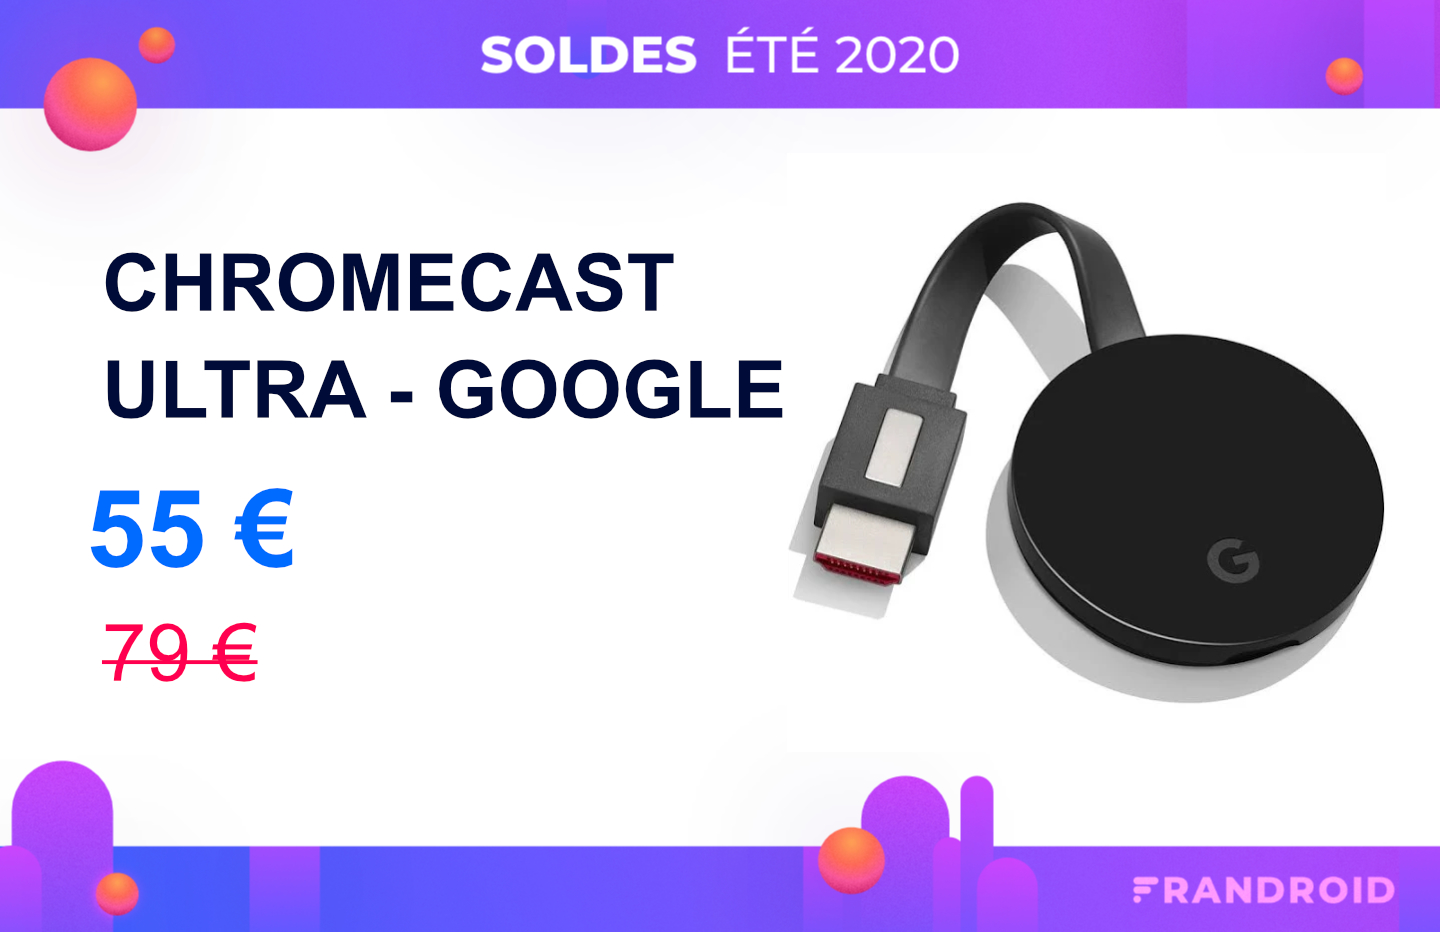 Profitez d’une remise inédite de 25 € sur le Google Chromecast Ultra